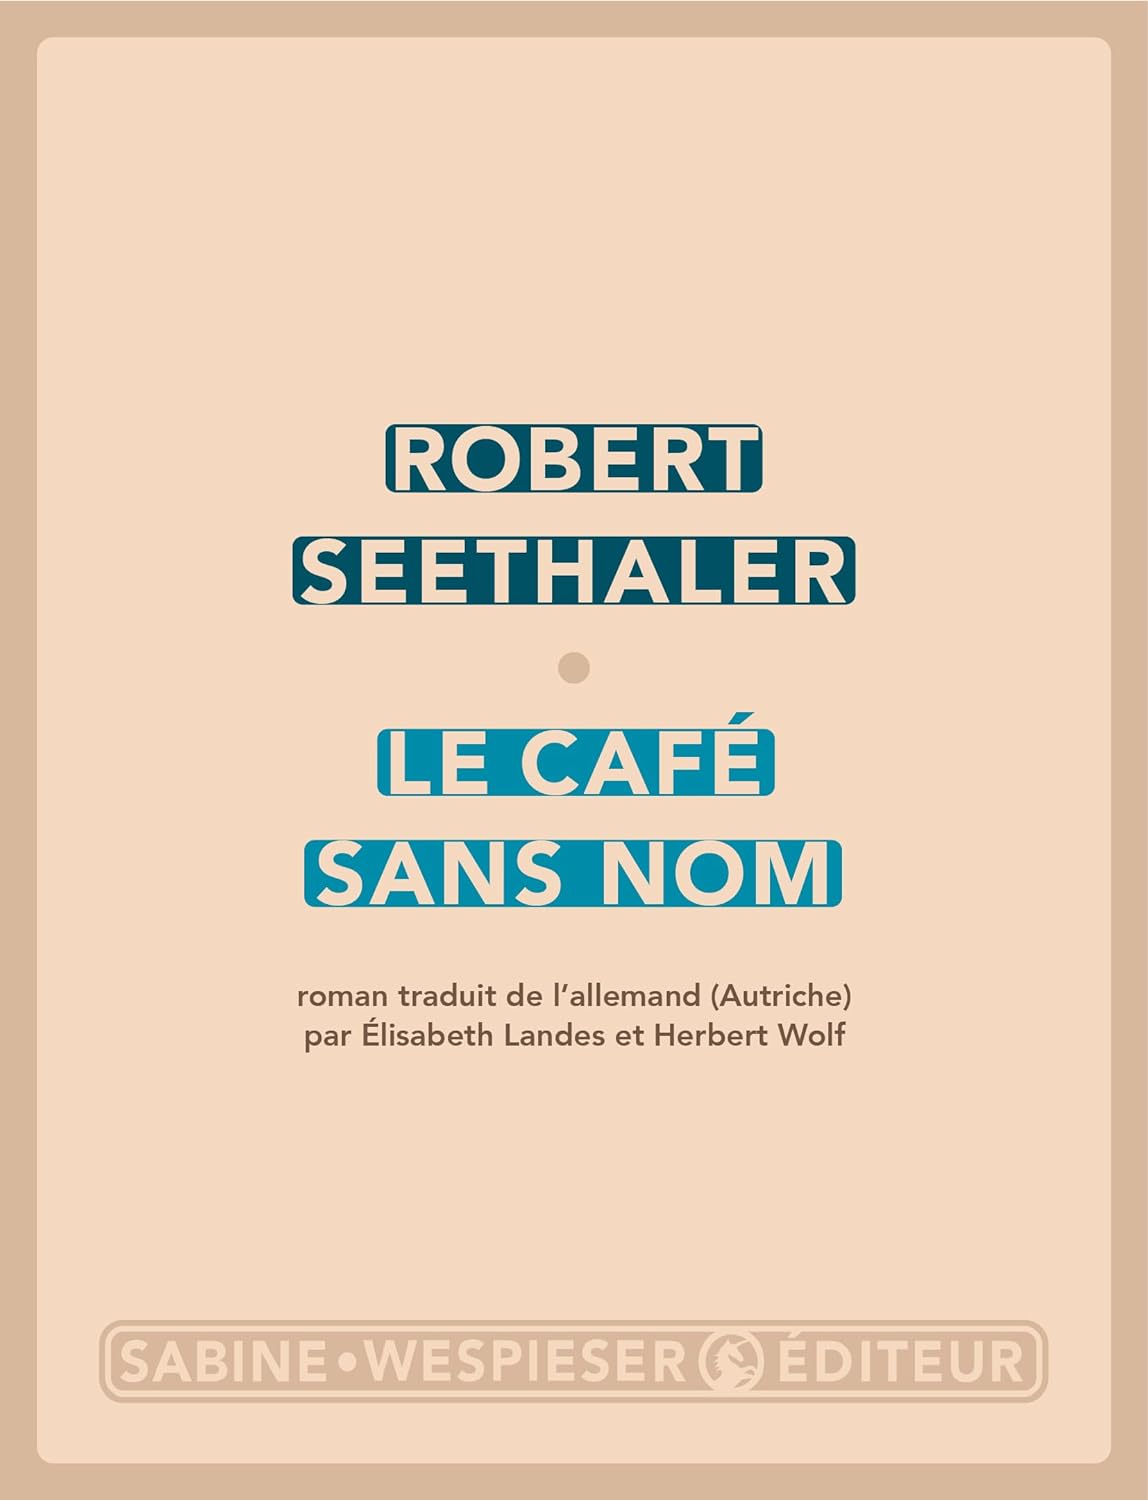 Élisabeth Landes, Herbert Wolf, Robert Seethaler: Le café sans nom (Paperback, français language, Sabine Wespieser Éditeur)